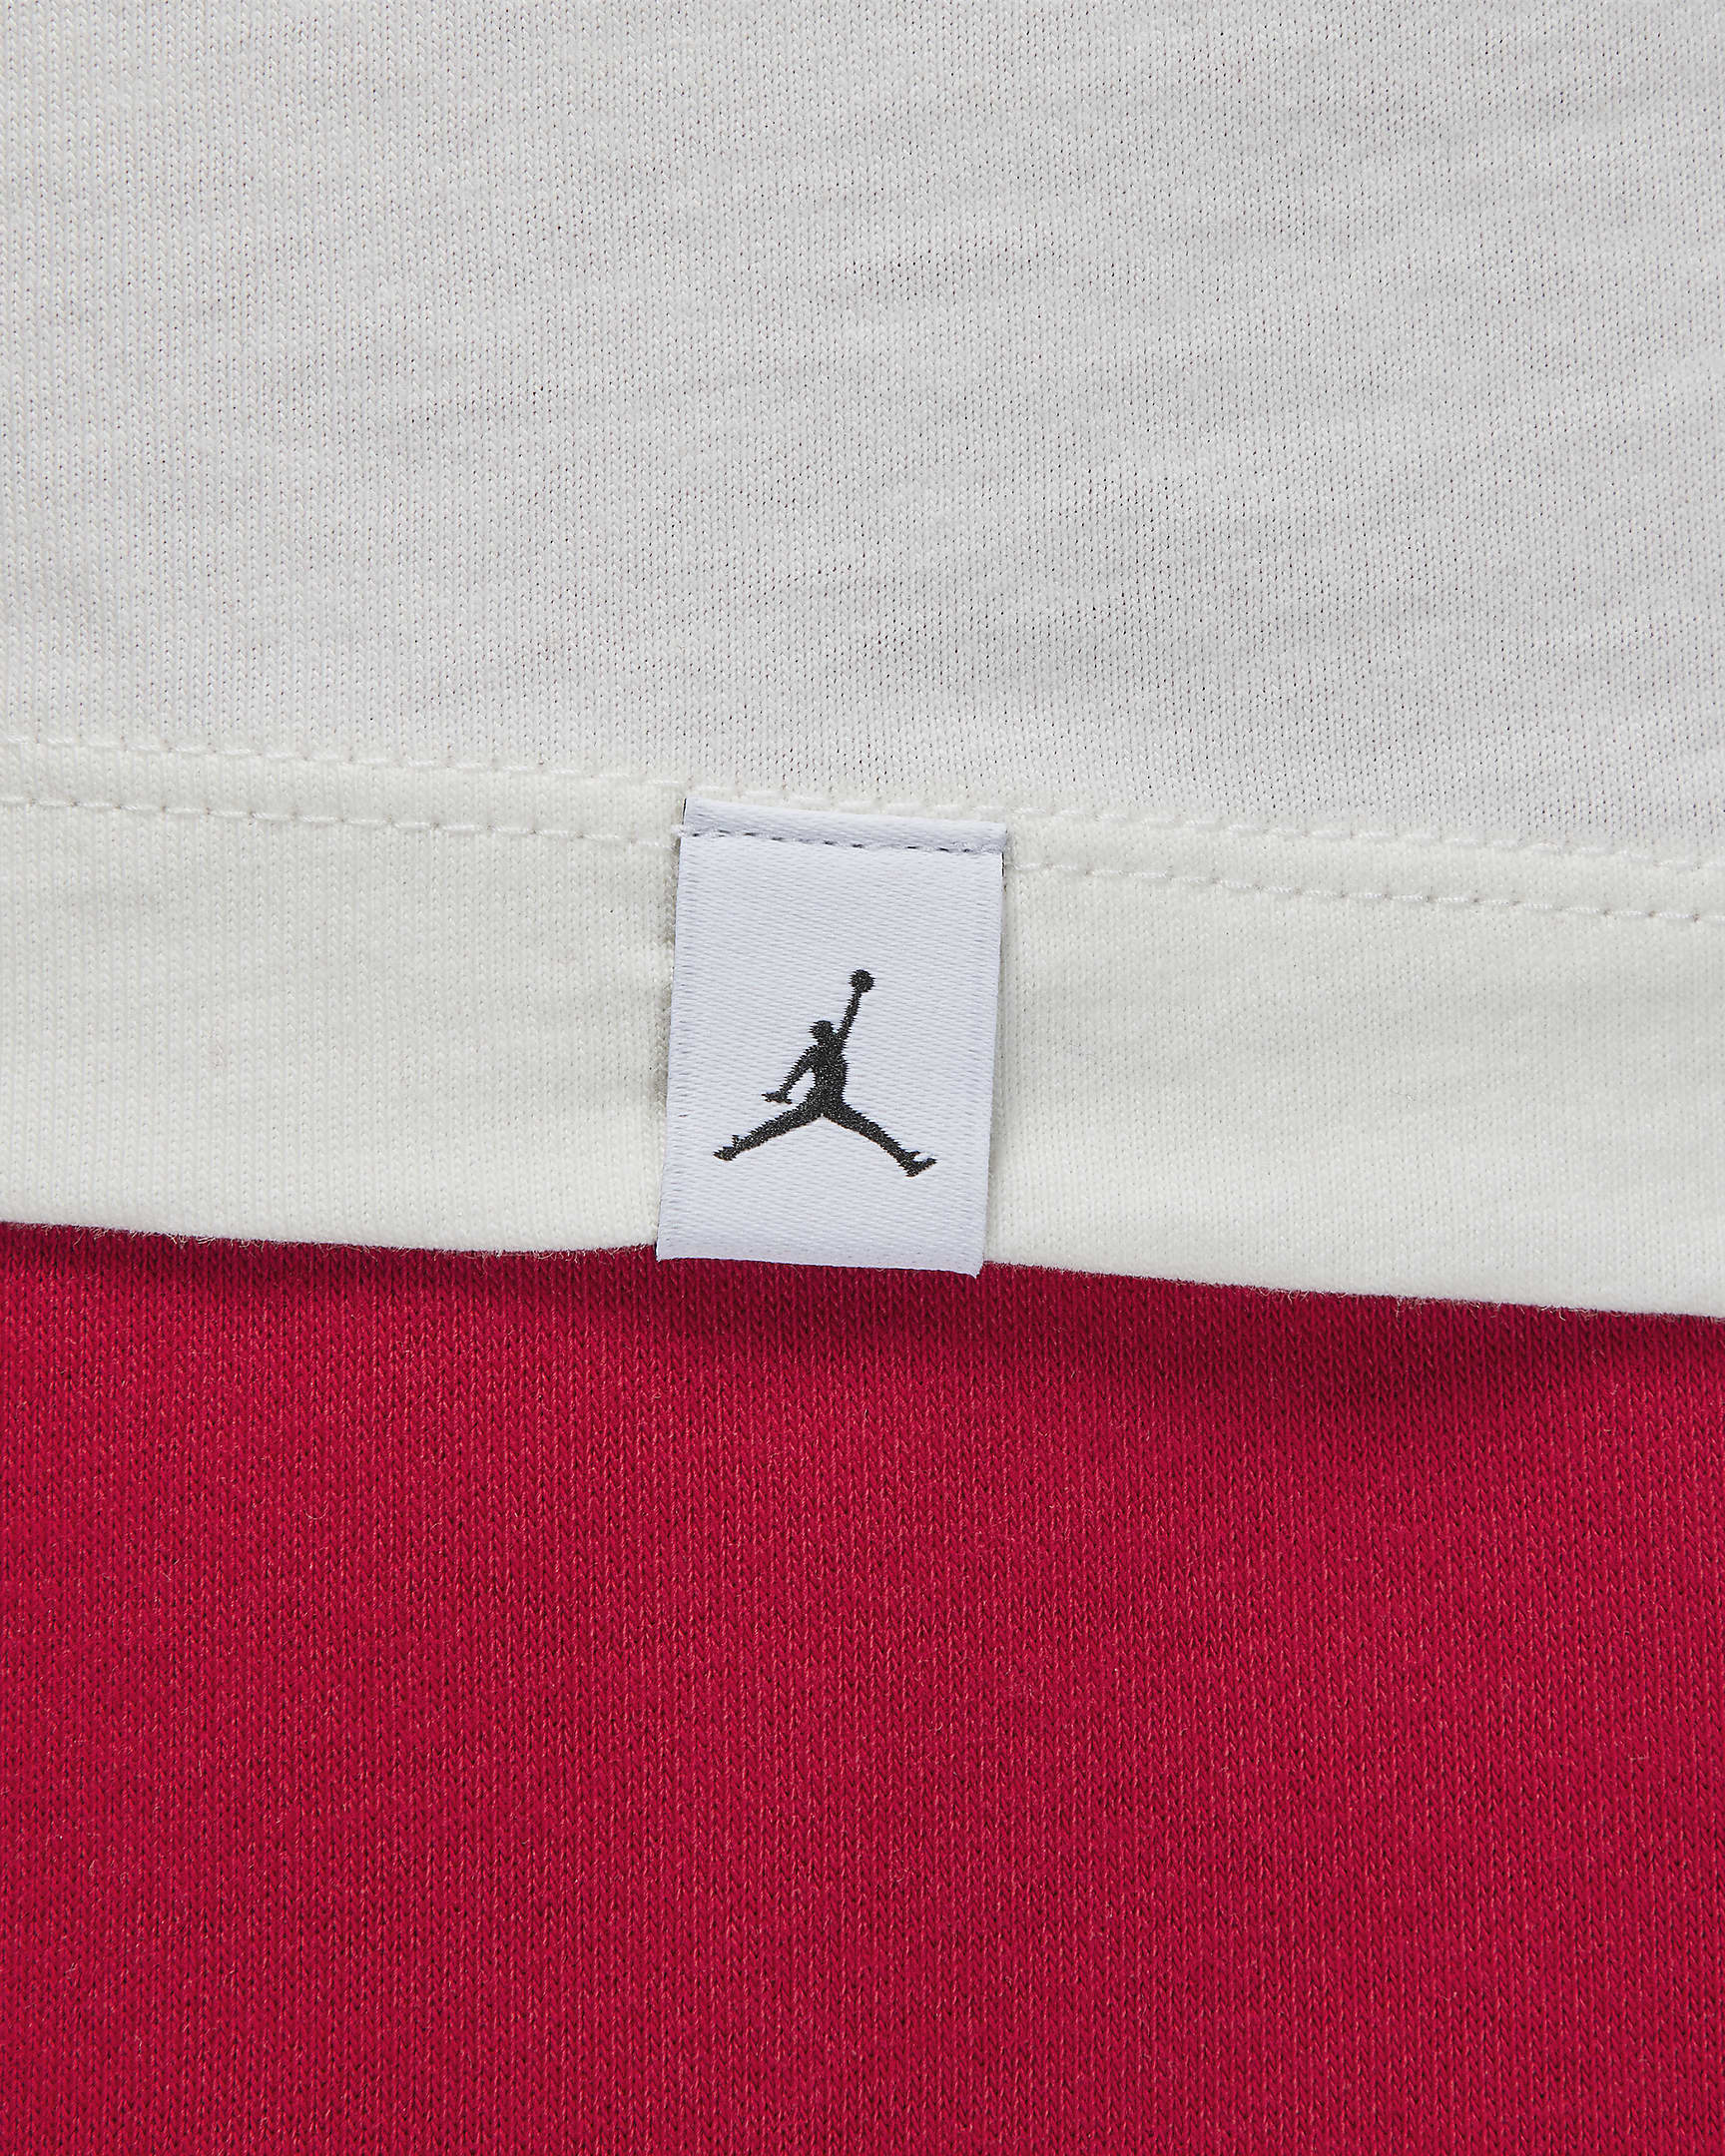 Jordan Flight Essentials Men's T-Shirt. Nike.com